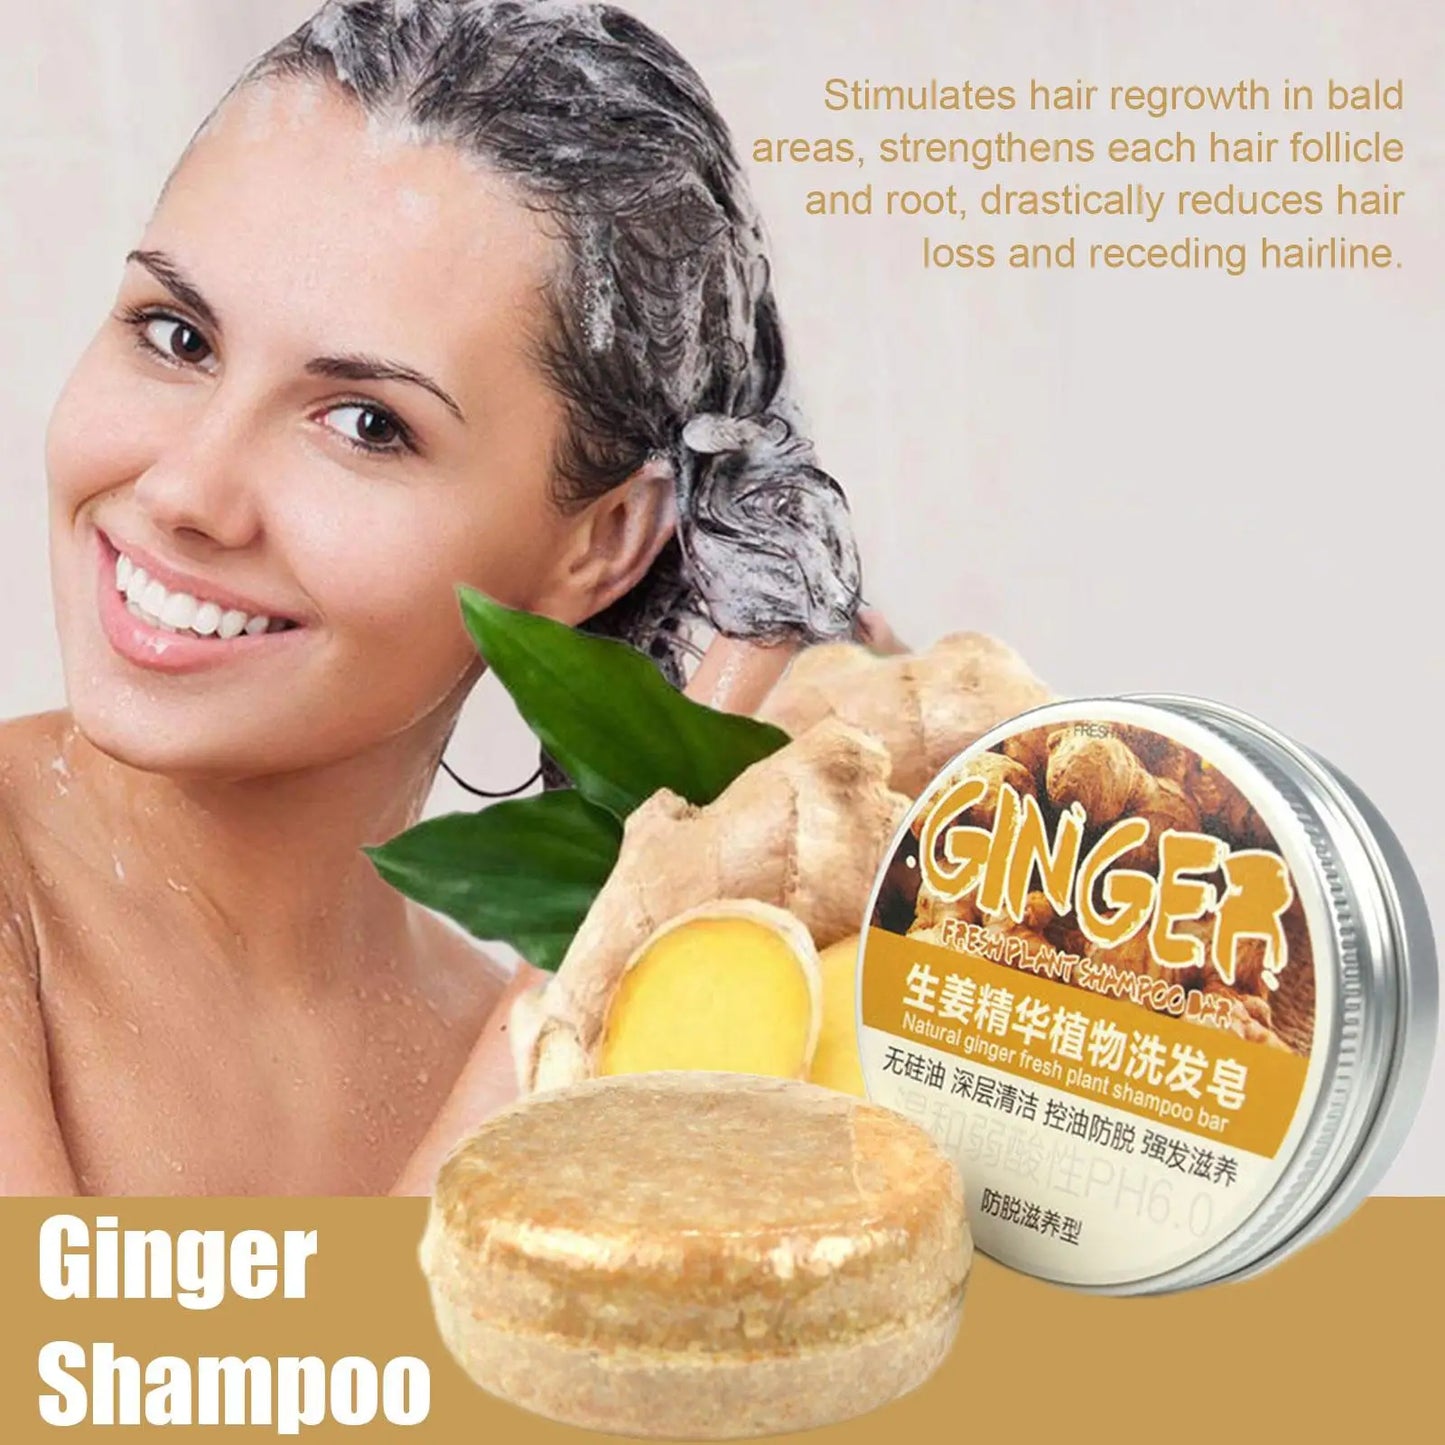 Ingwer-Polygonum-Seife, Shampoo-Seife, kaltverarbeitete Seife, Haar-Shampoo-Riegel, rein pflanzliche Haar-Shampoos, Haarpflege